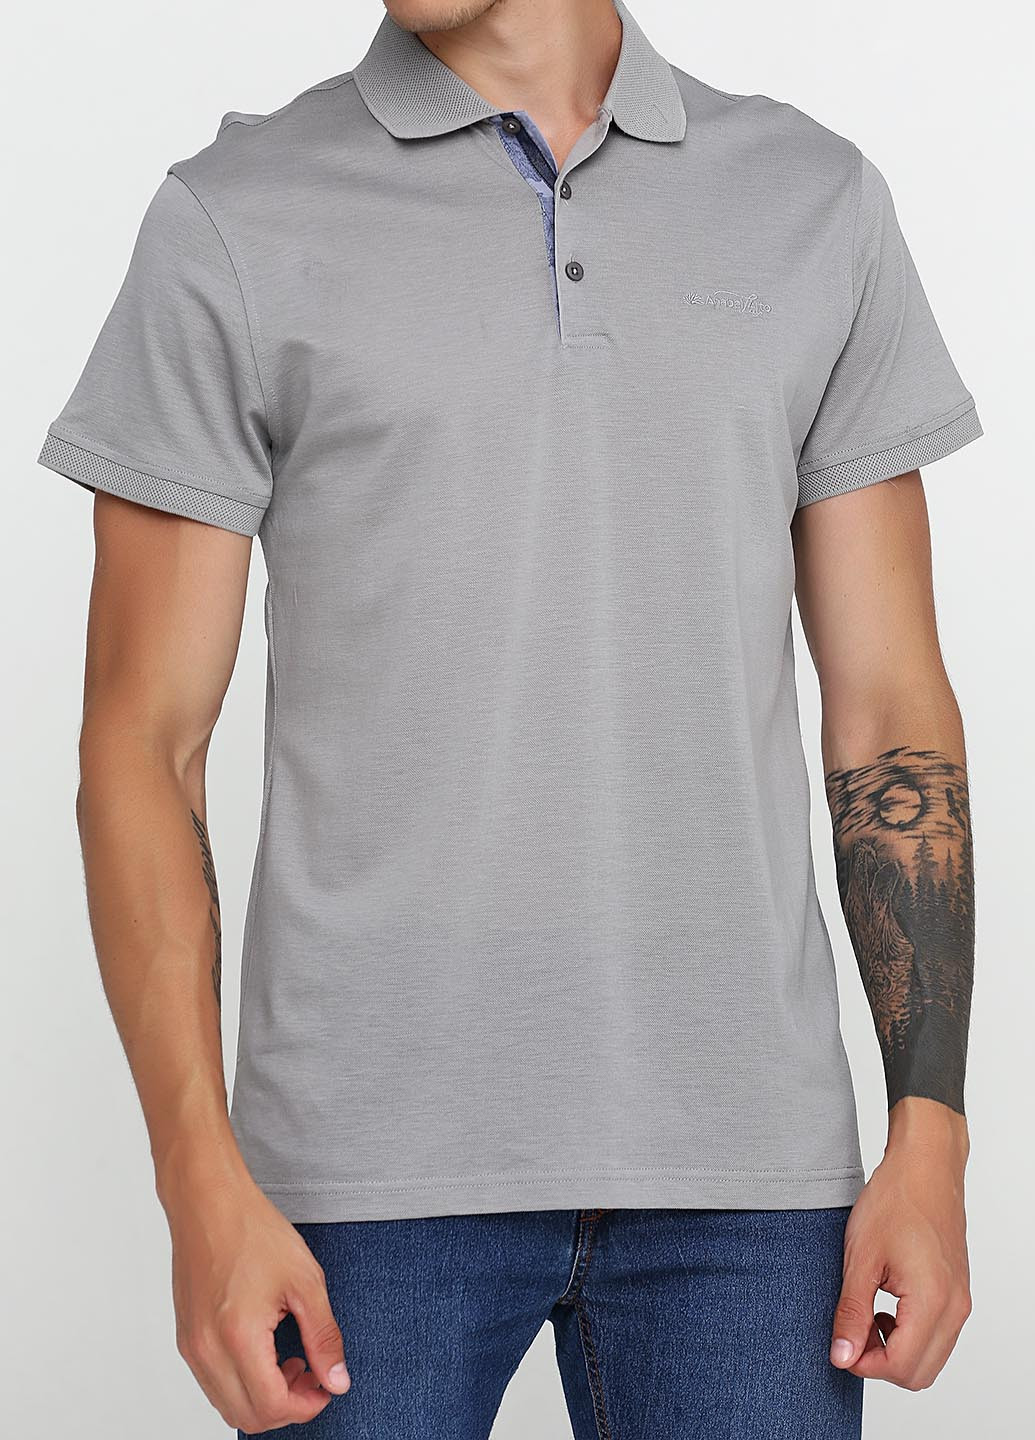 Серая футболка-поло для мужчин Anabel Arto с логотипом